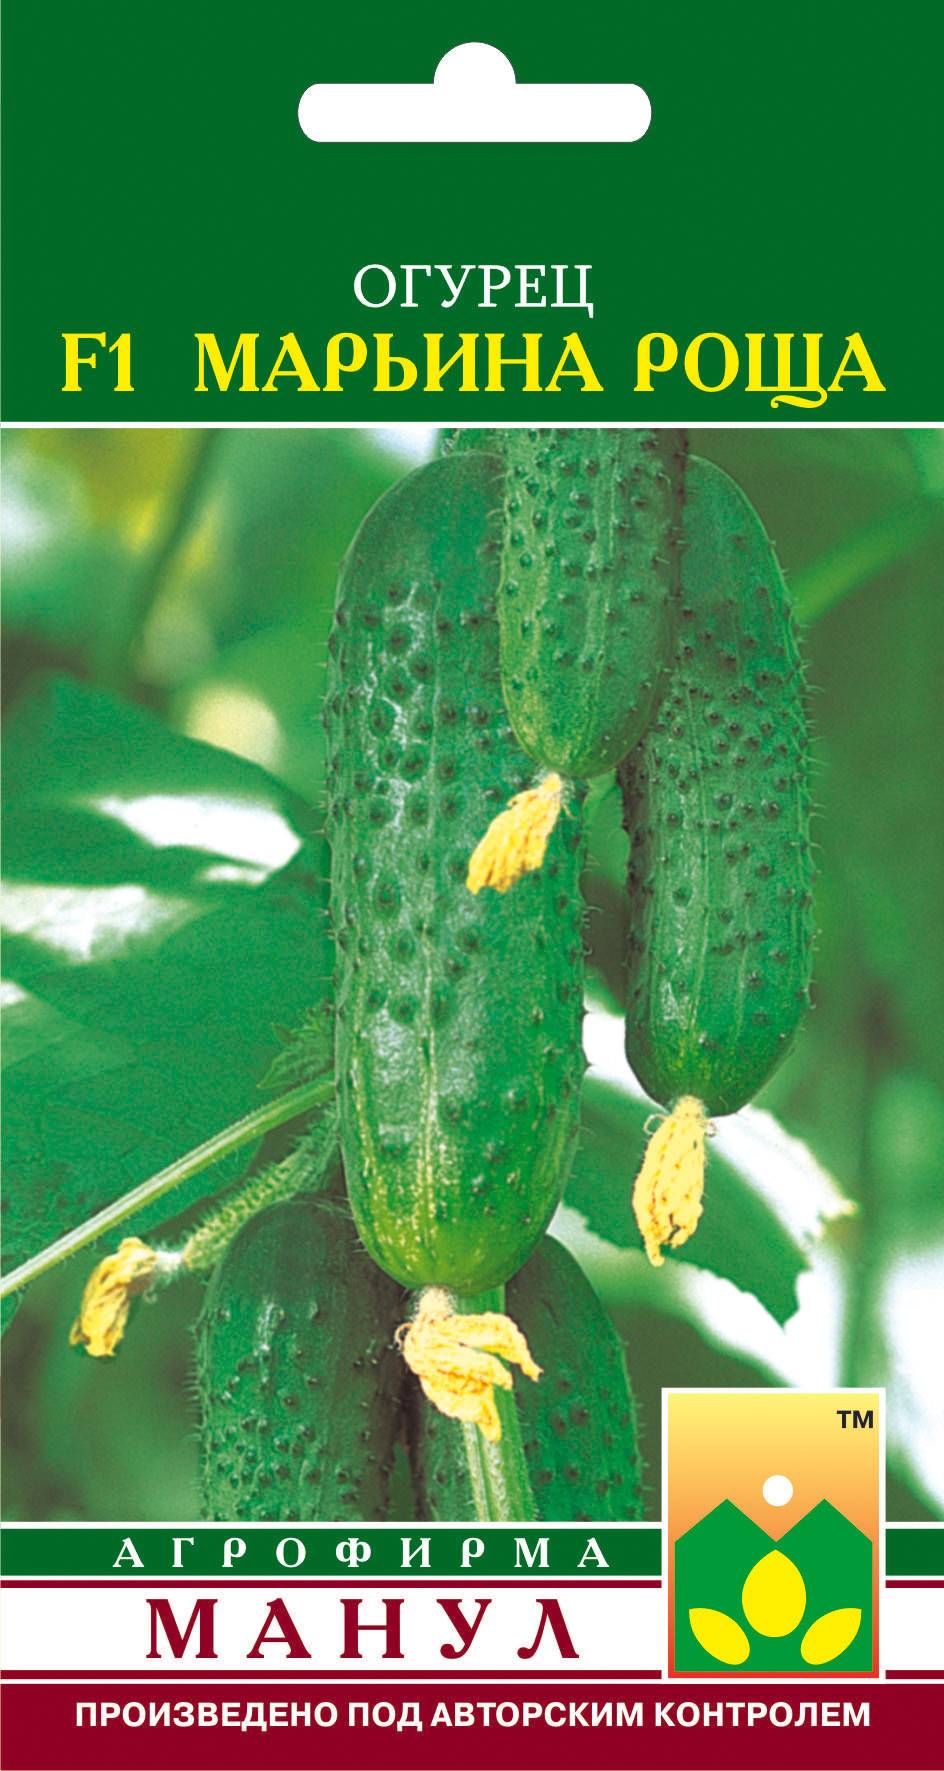 Скороспелый гибрид огурца «марьина роща f1», любимый дачниками за высокую урожайность